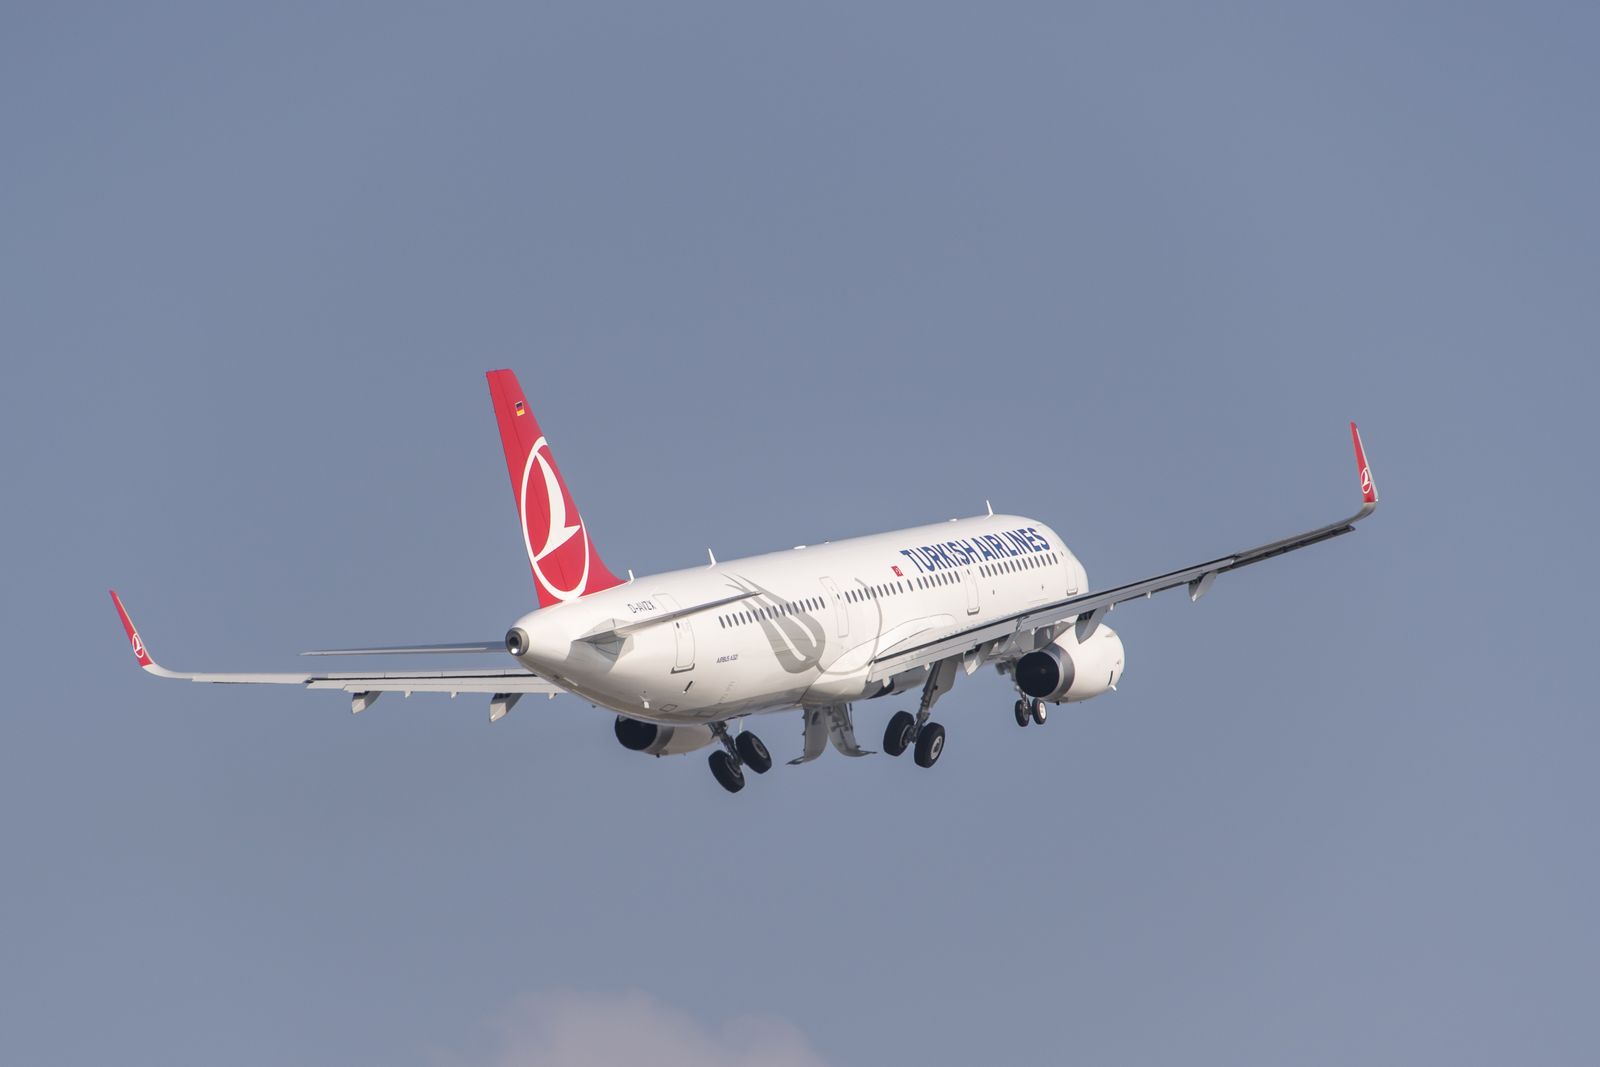 “Fliegen Sie eine Linkskurve, Airbus A321 startet”